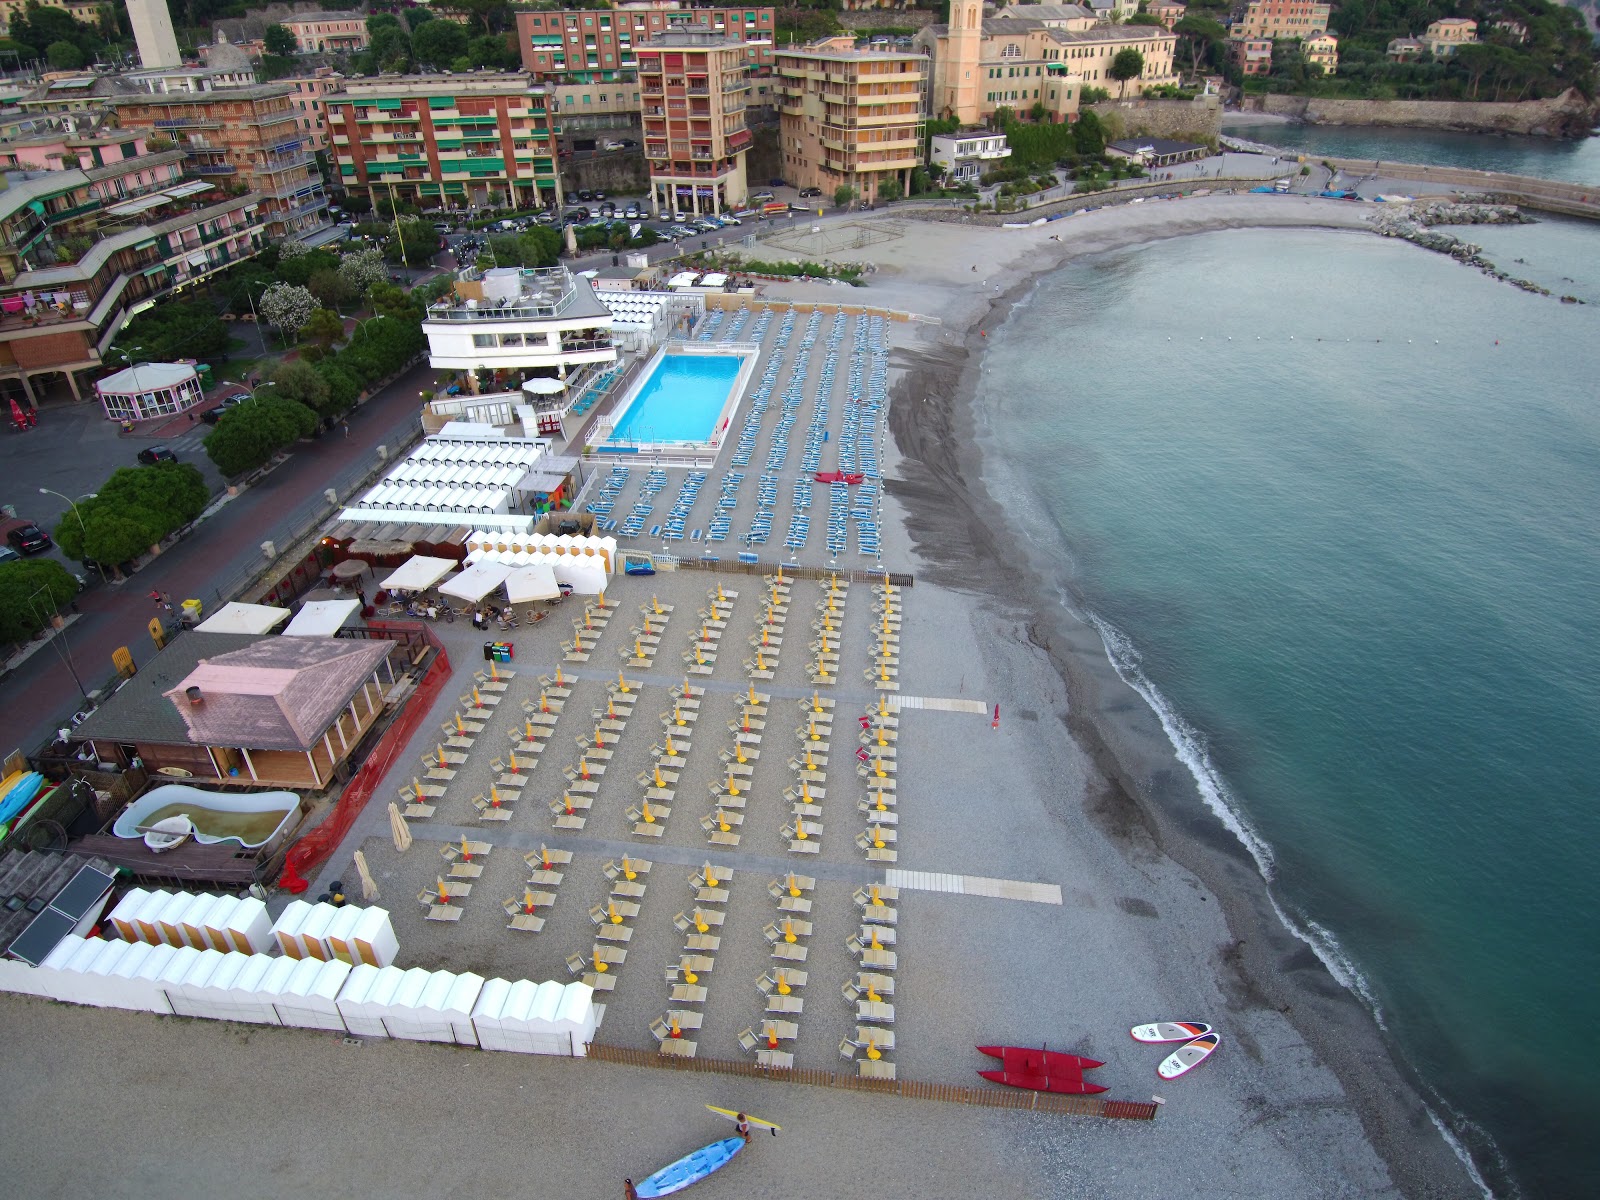 Spiaggia di Recco'in fotoğrafı plaj tatil beldesi alanı